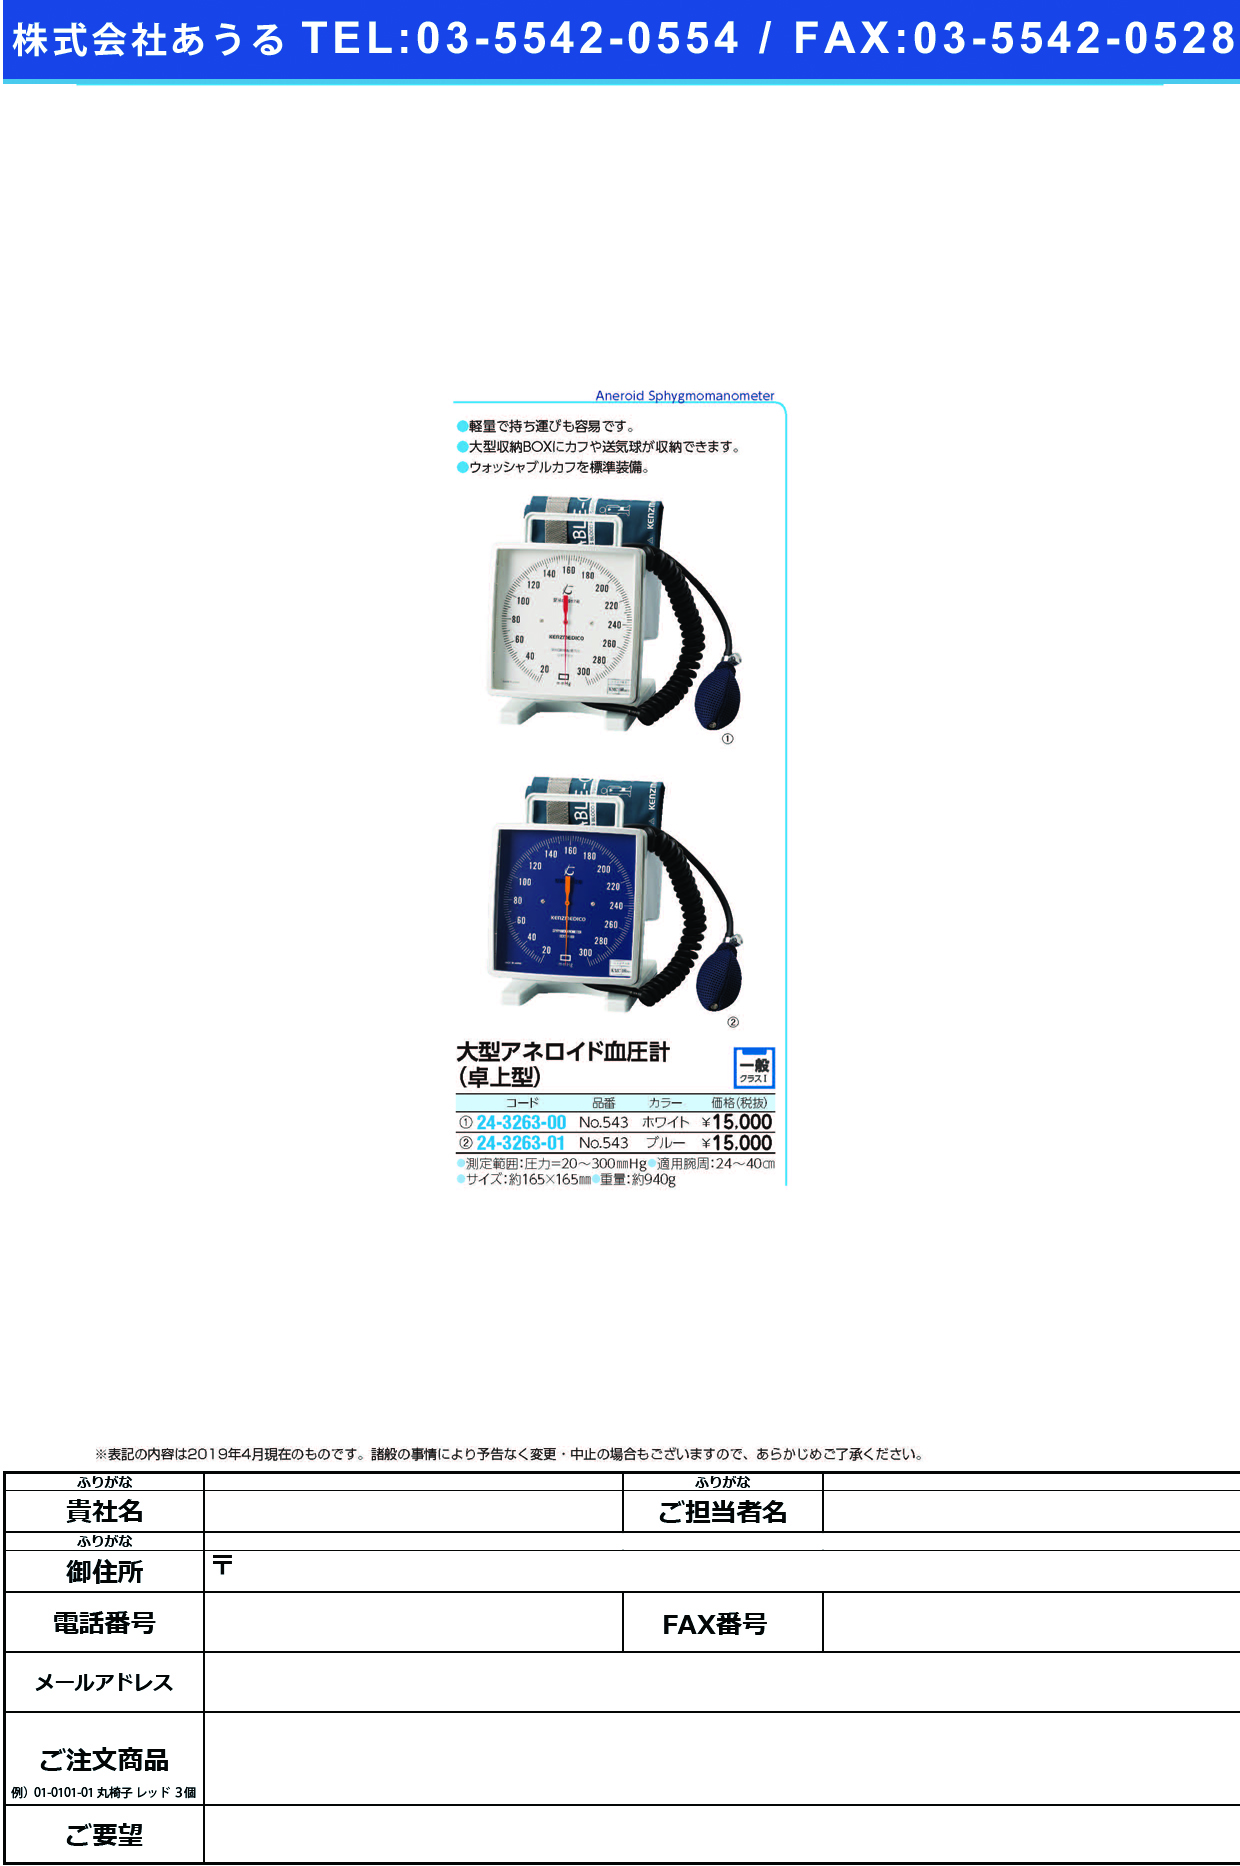 (24-3263-00)大型アネロイド血圧計（卓上型）Ｗカフ NO.543(ﾎﾜｲﾄ)Wｶﾌ ｵｵﾀﾞﾀｱﾈﾛｲﾄﾞｹﾂｱﾂｹｲ(ケンツメディコ)【1台単位】【2019年カタログ商品】